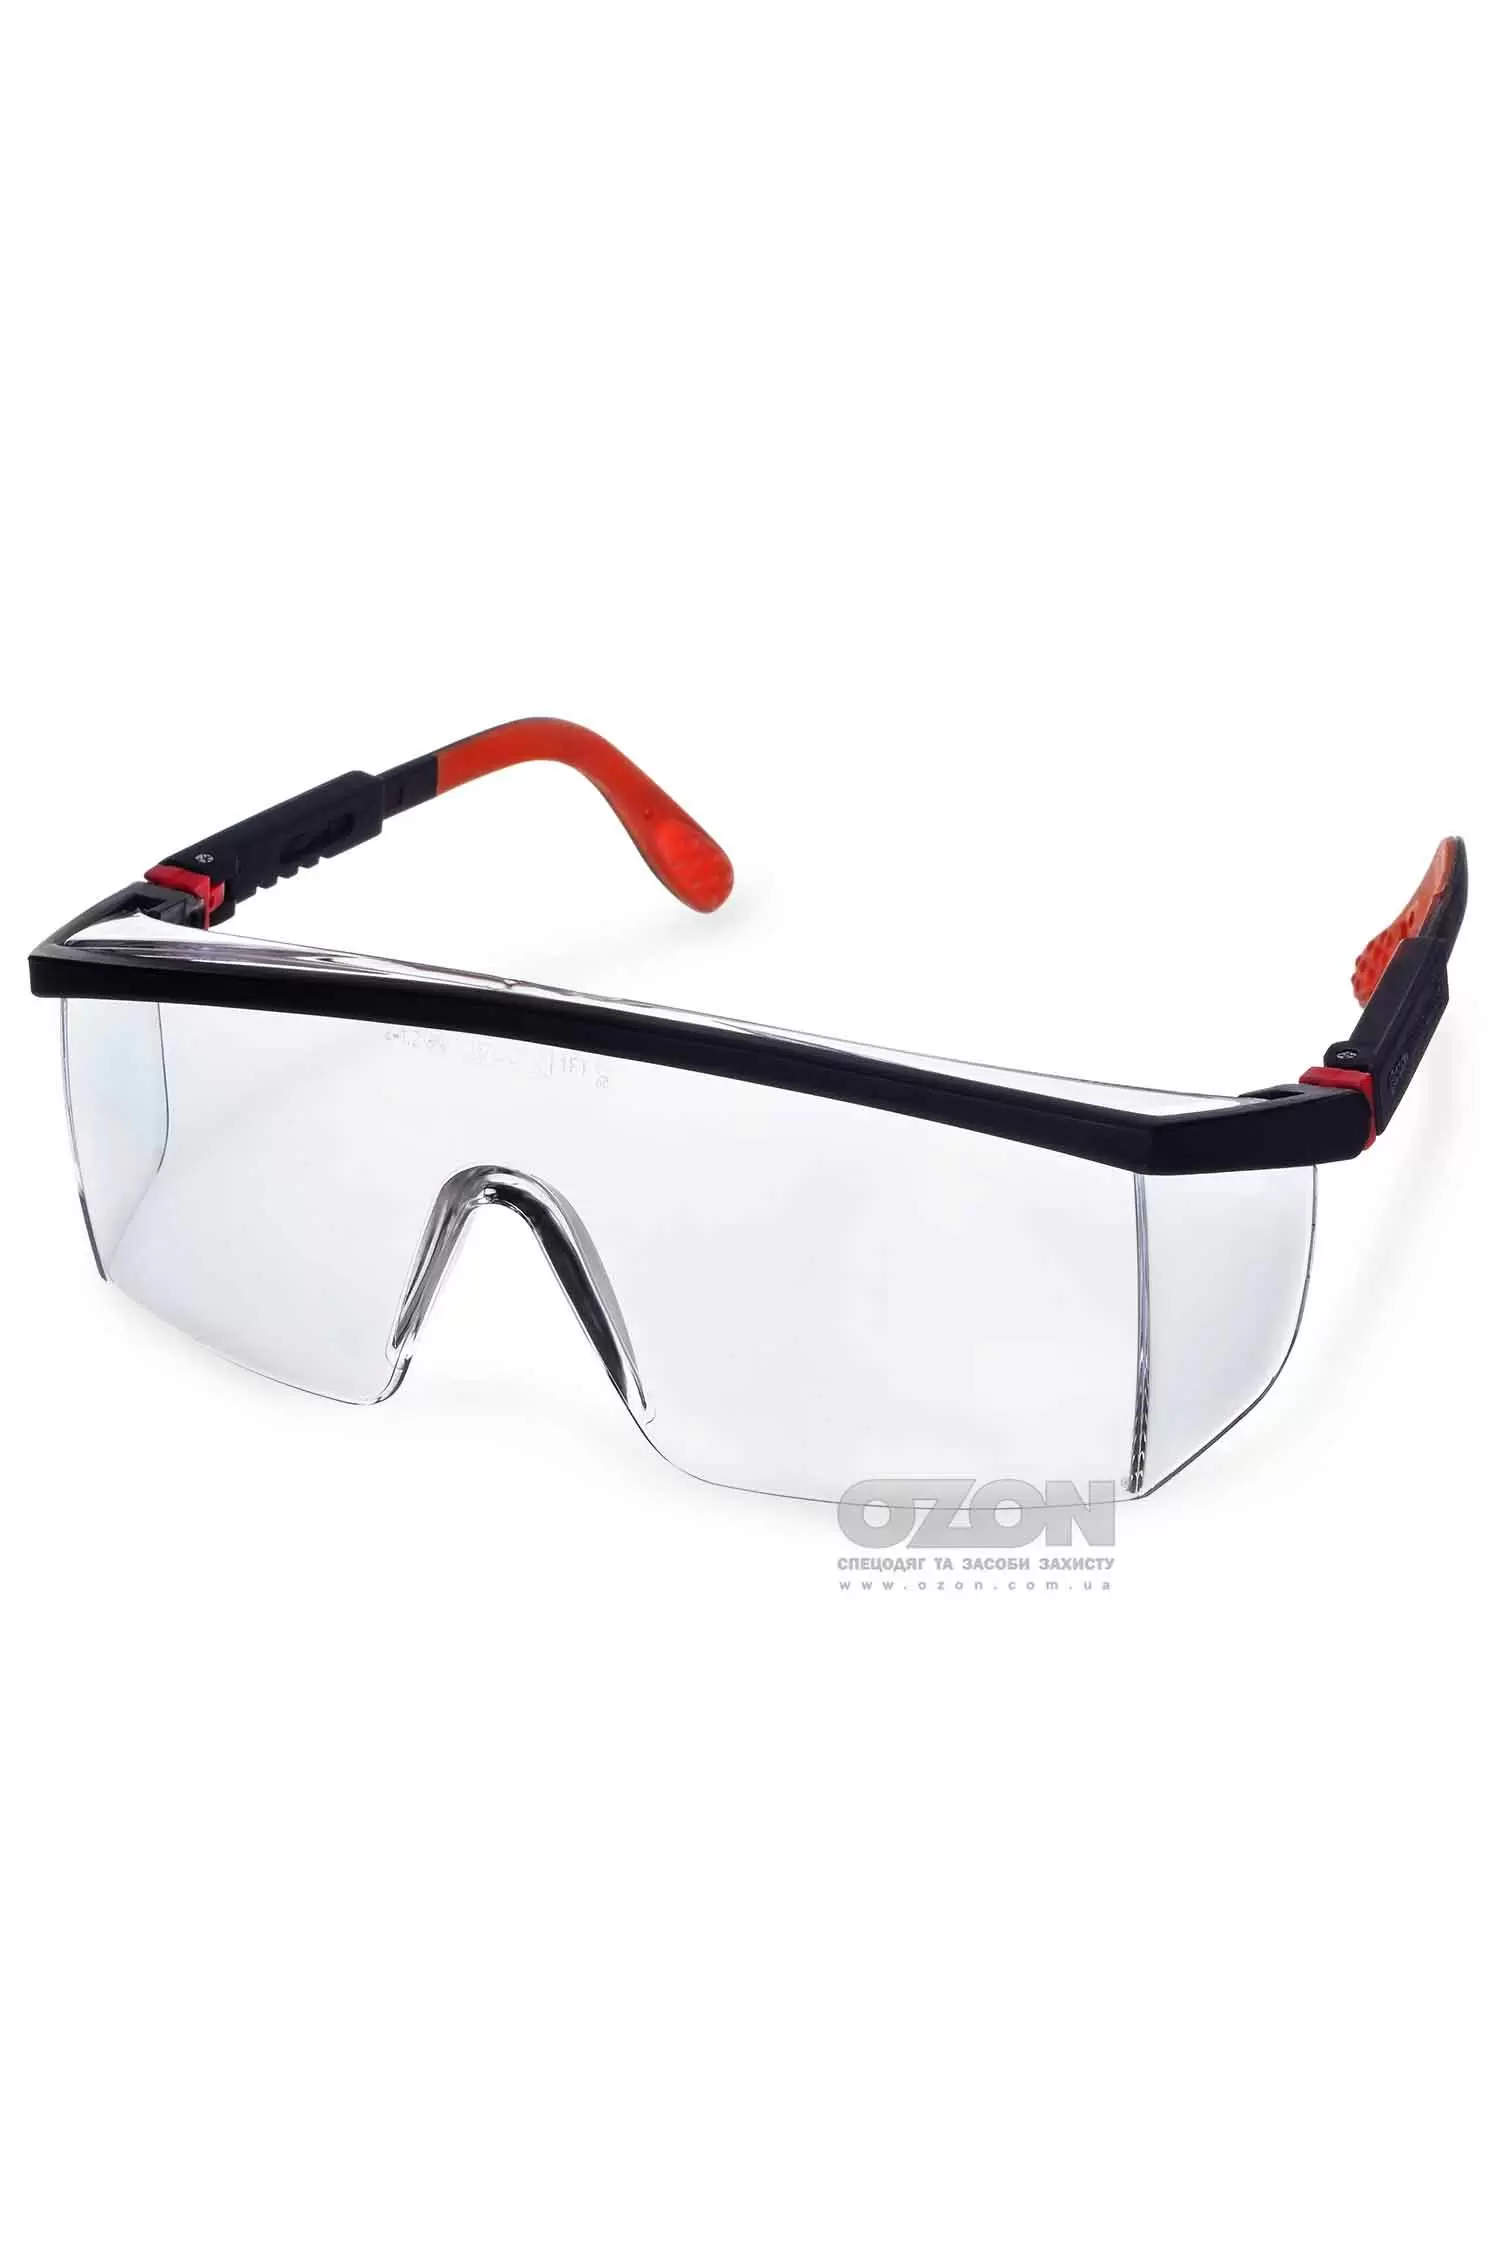 Захисні окуляри OZON™ Комфорт® 7-013 - Фото 1